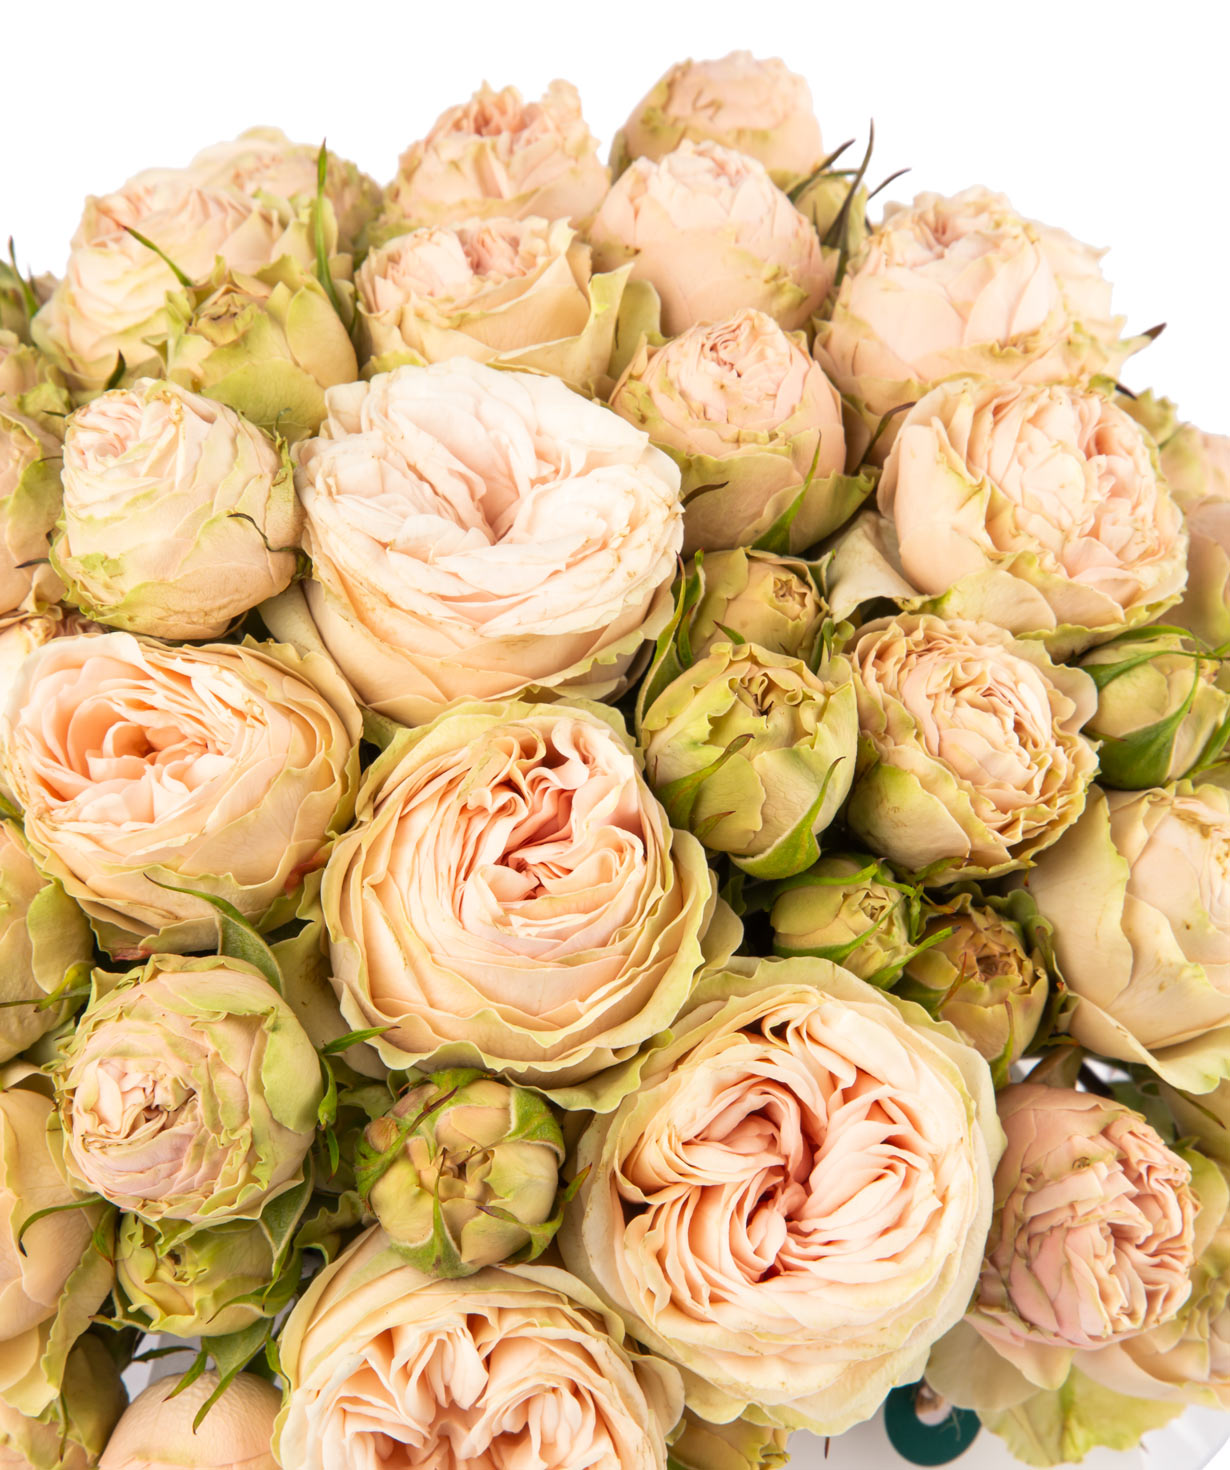 Композиция `Аурора` с букетными пионовидными розами